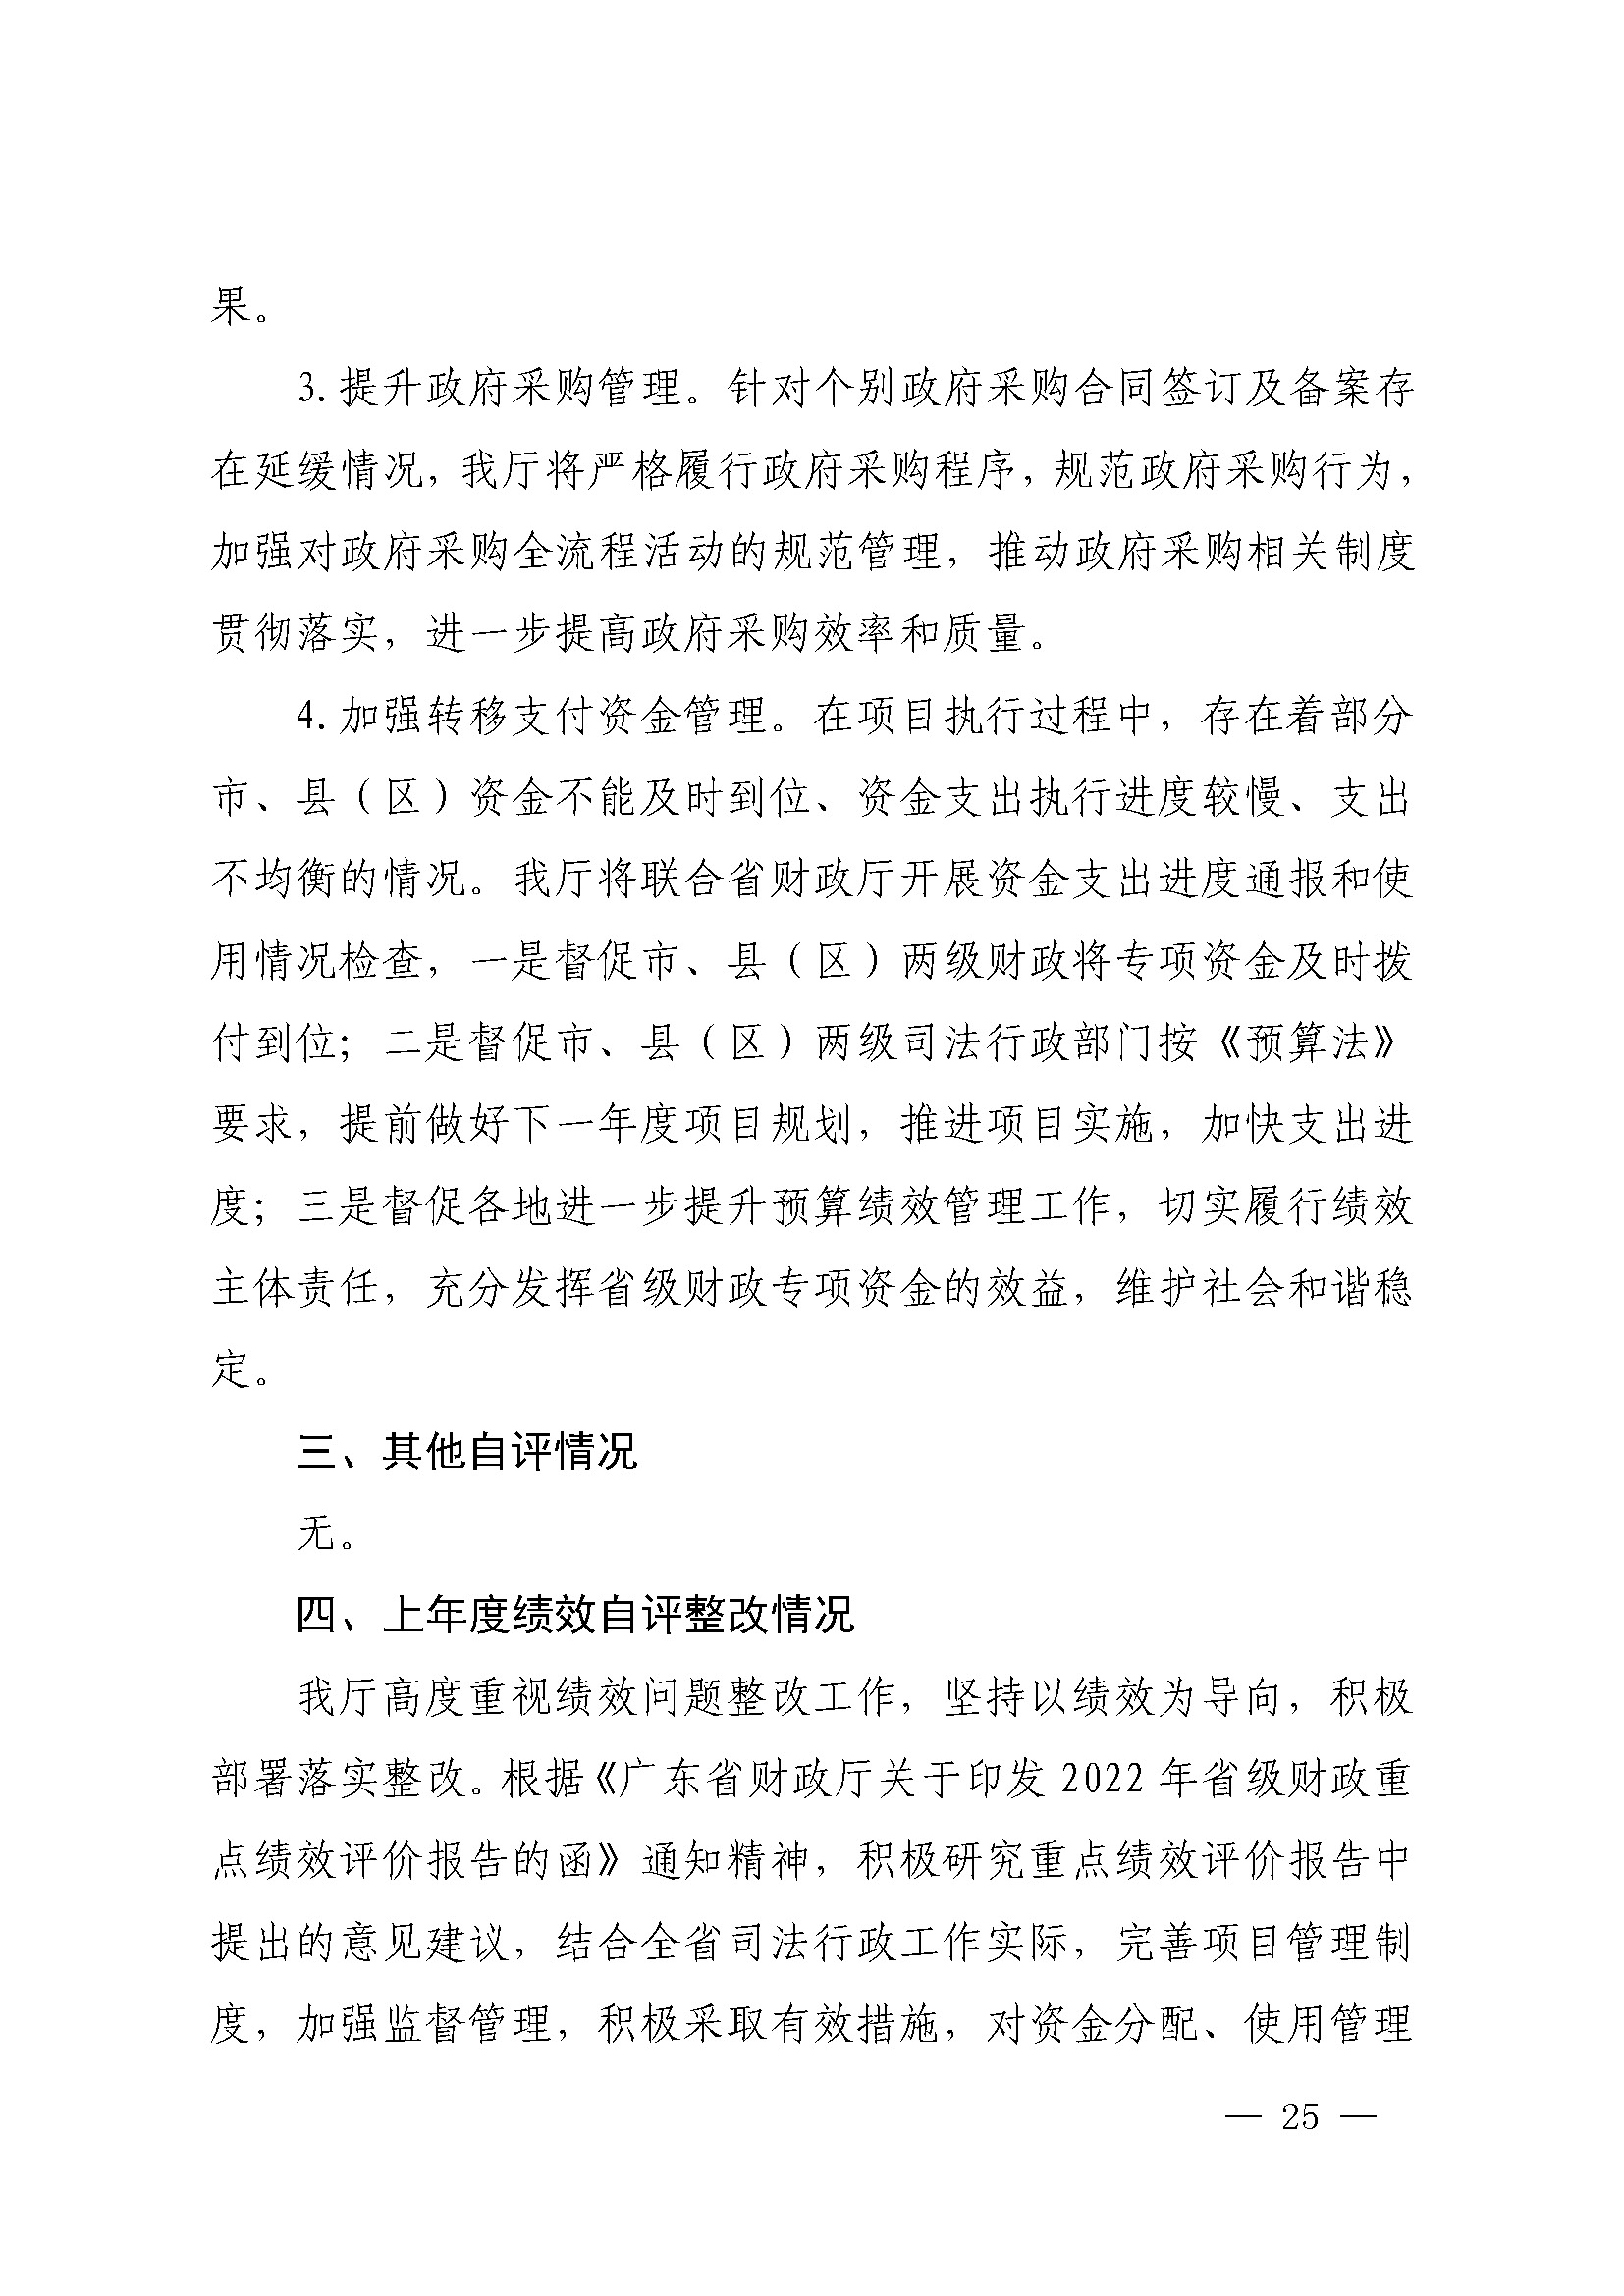 广东省司法厅2022年度部门整体支出绩效自评报告_页面_25.jpg